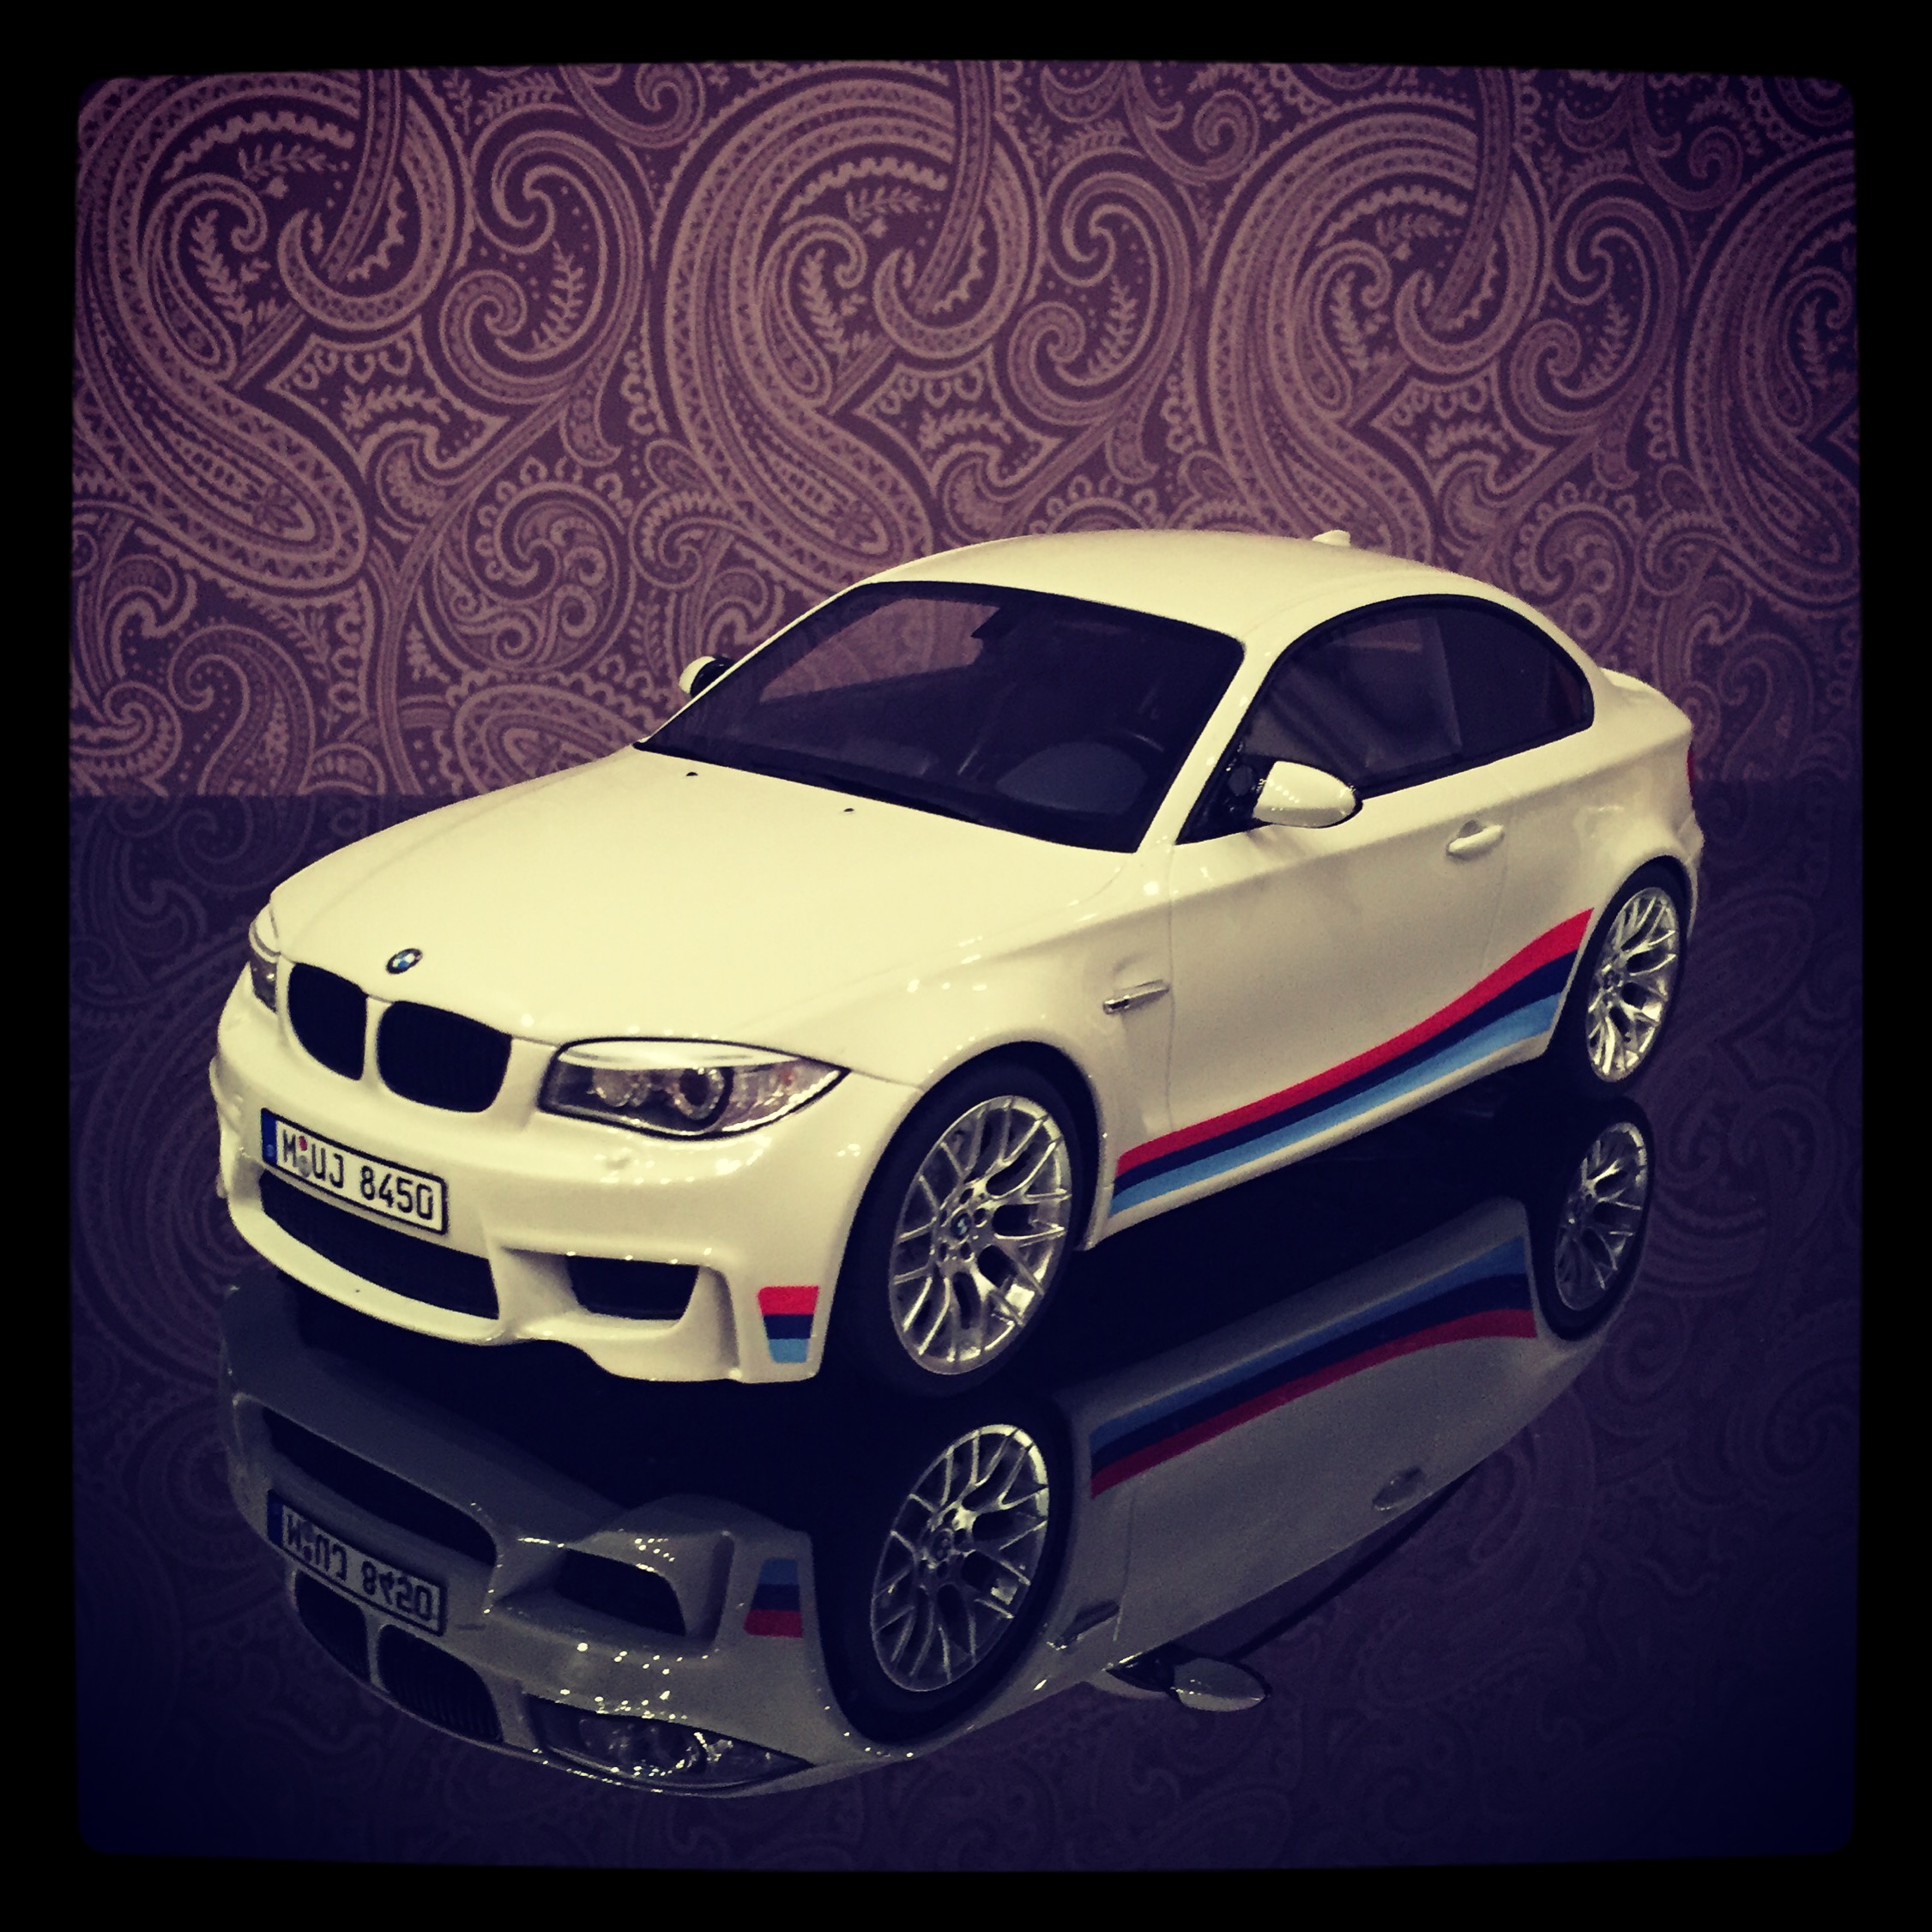 BMW 1M (E82) white, le 0439 of 1,500pcs. (gt spirit)